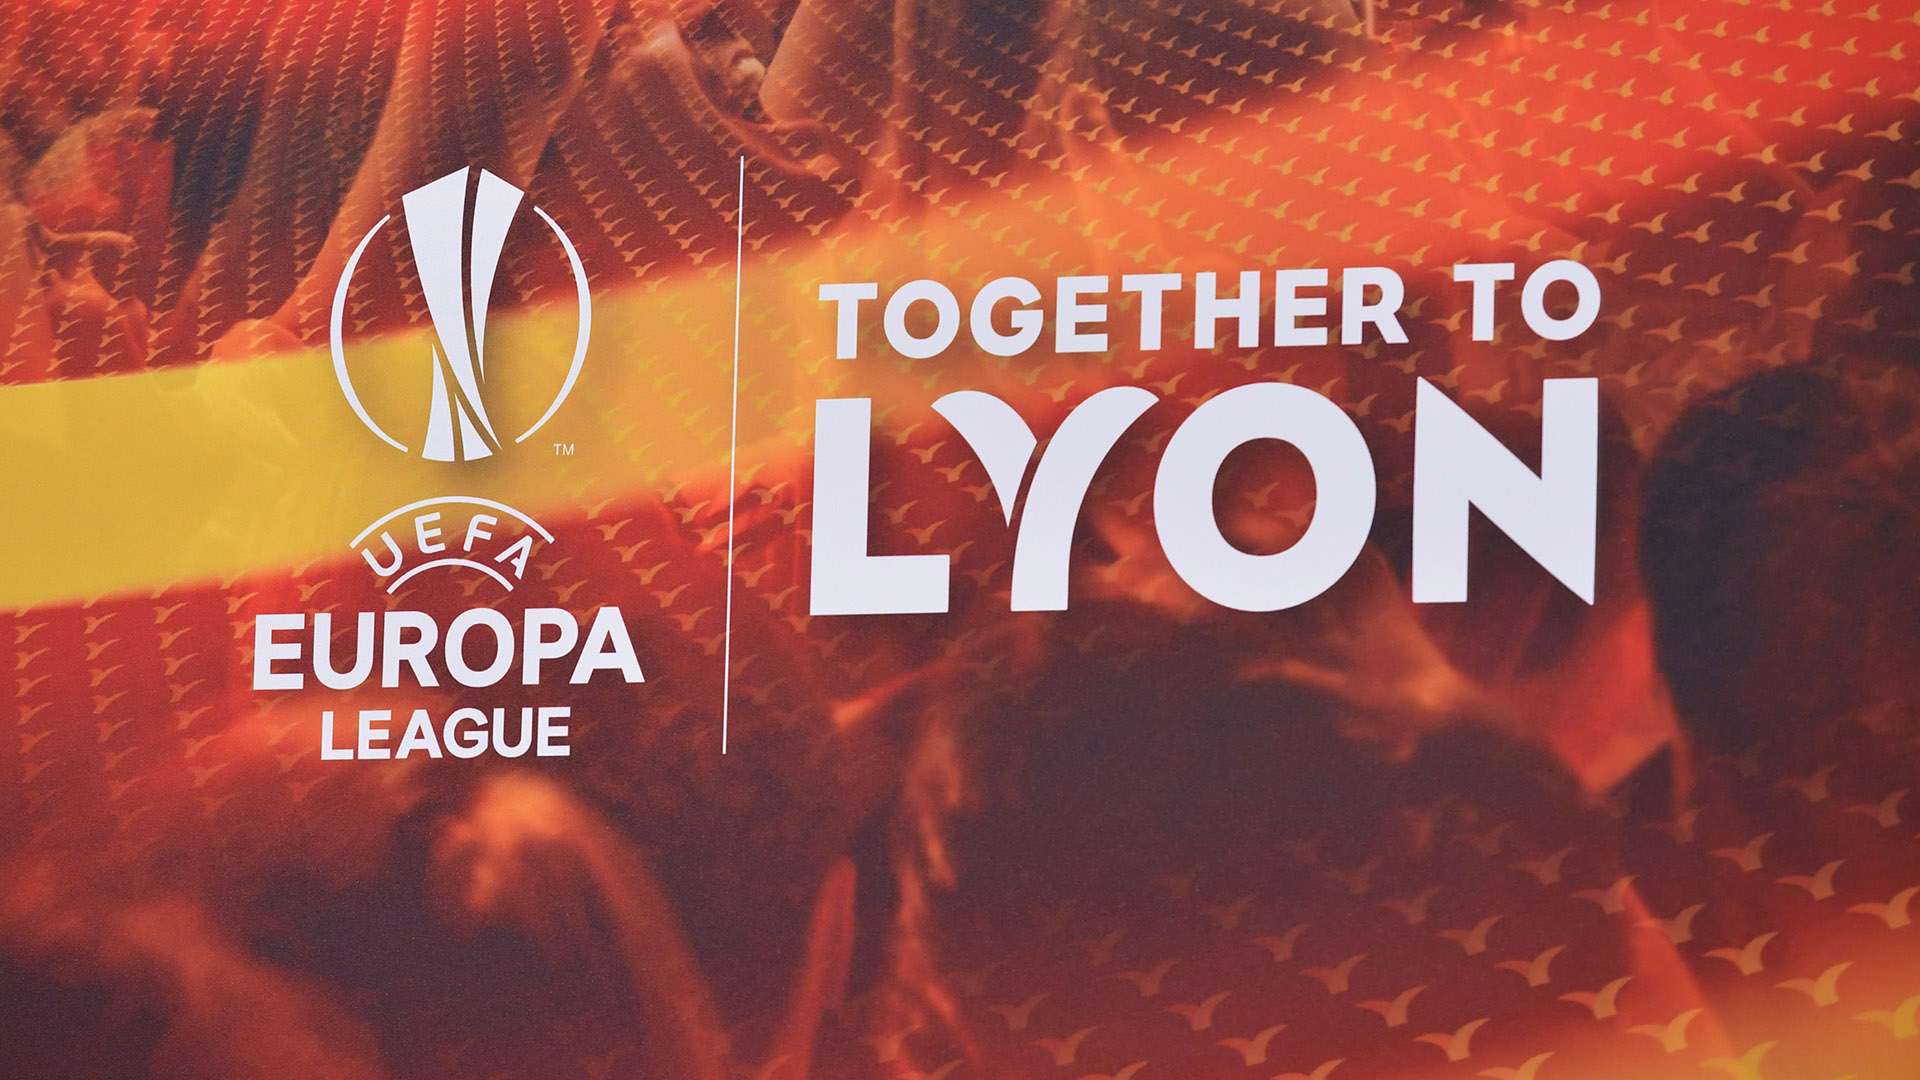 Uefa Europa League 2018 Draw